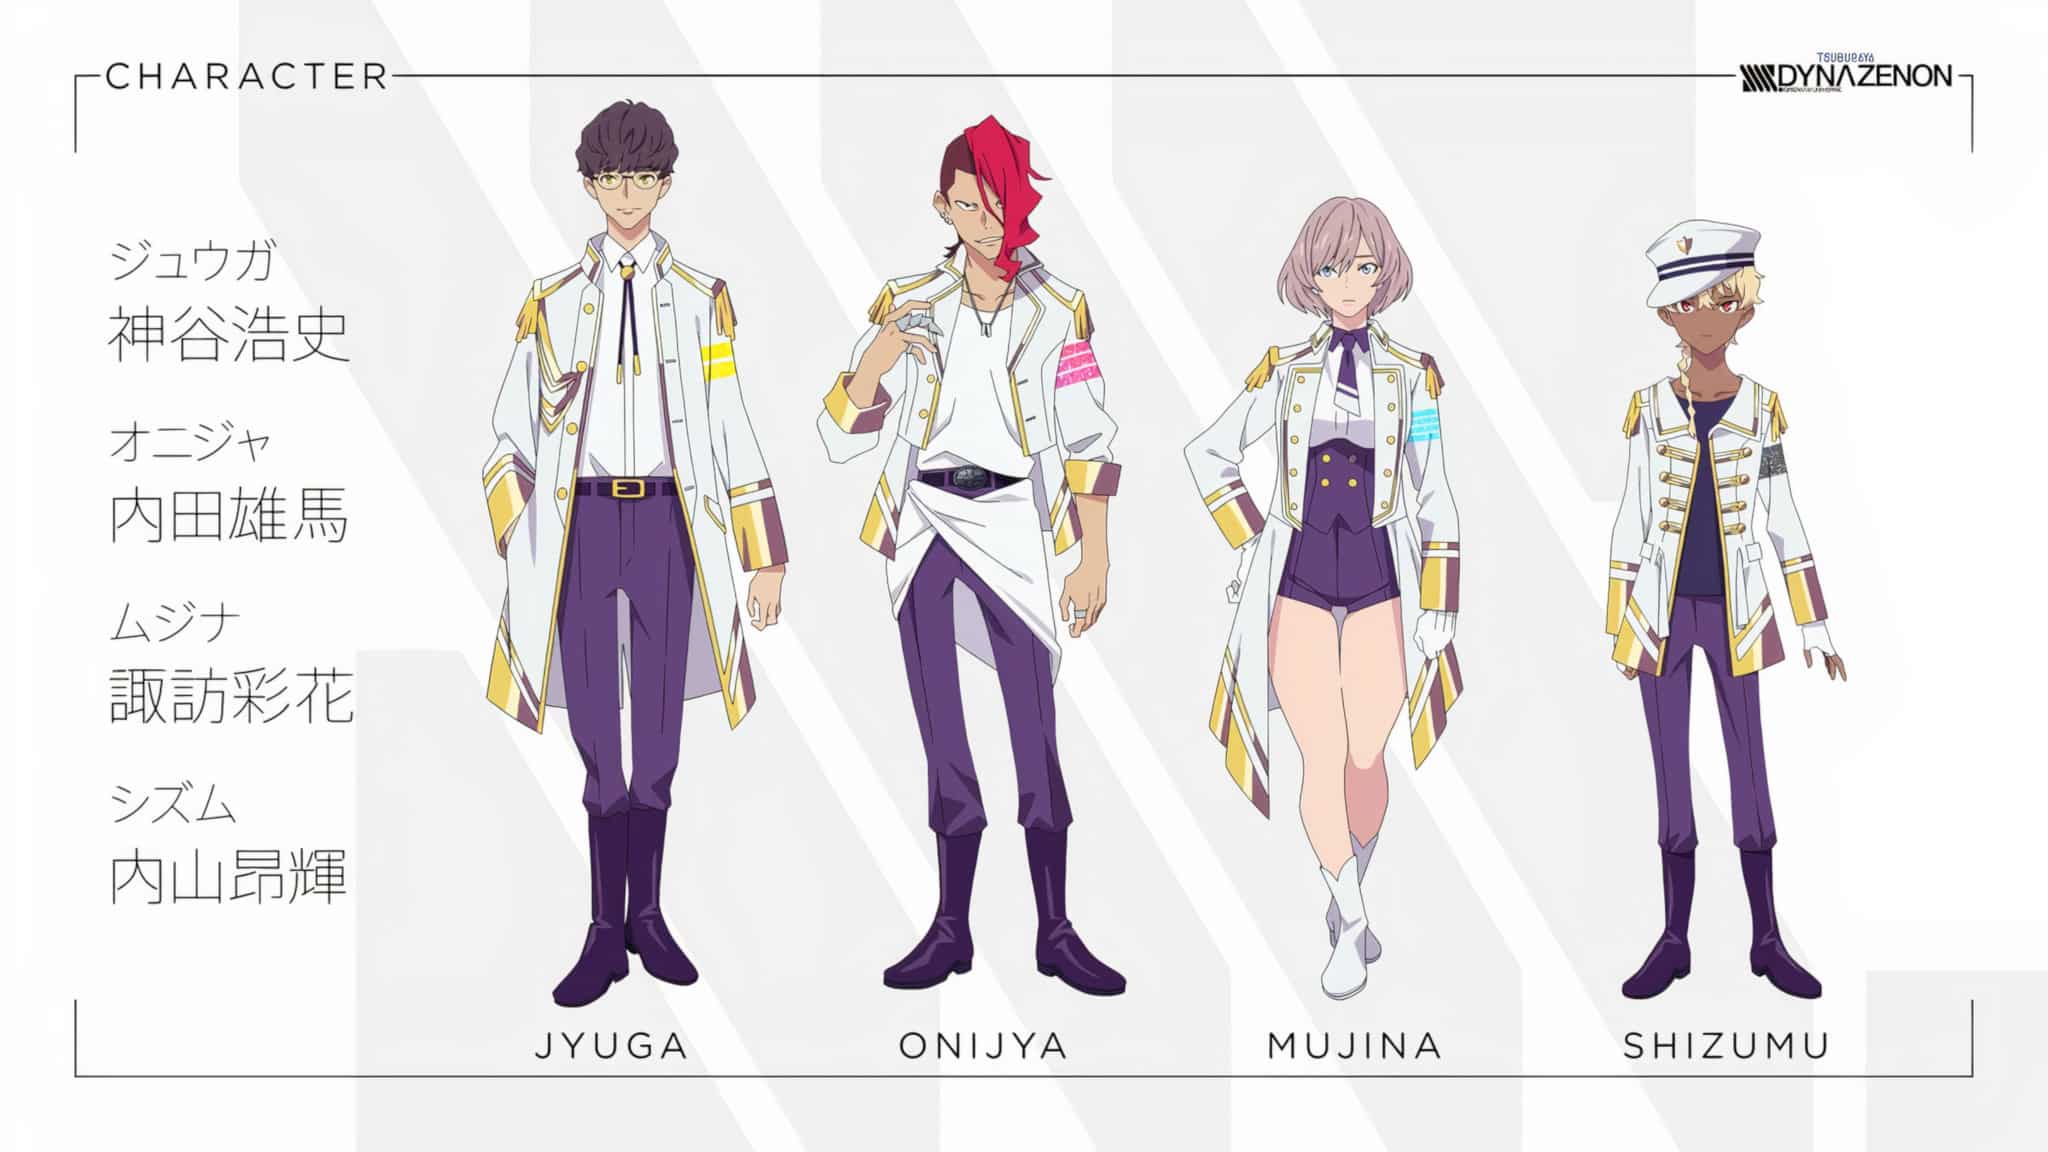 Chara Design de Jyuga, Onijya, Mujina et Shizumu pour l'anime SSSS DYNAZENON